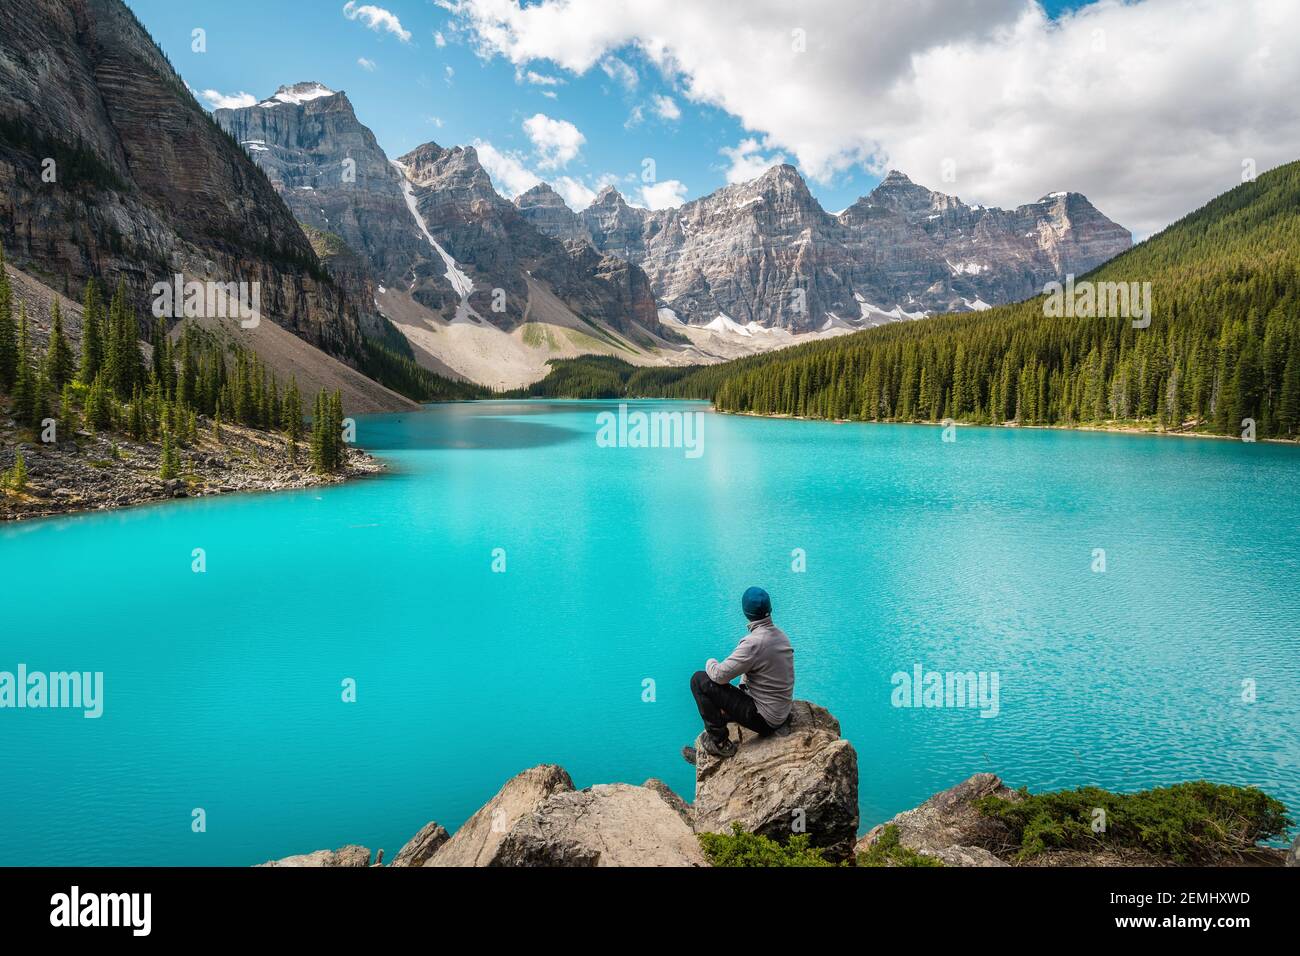 Excursionista en el Lago Moraine durante el verano en el Parque Nacional Banff, Alberta, Canadá. Foto de stock